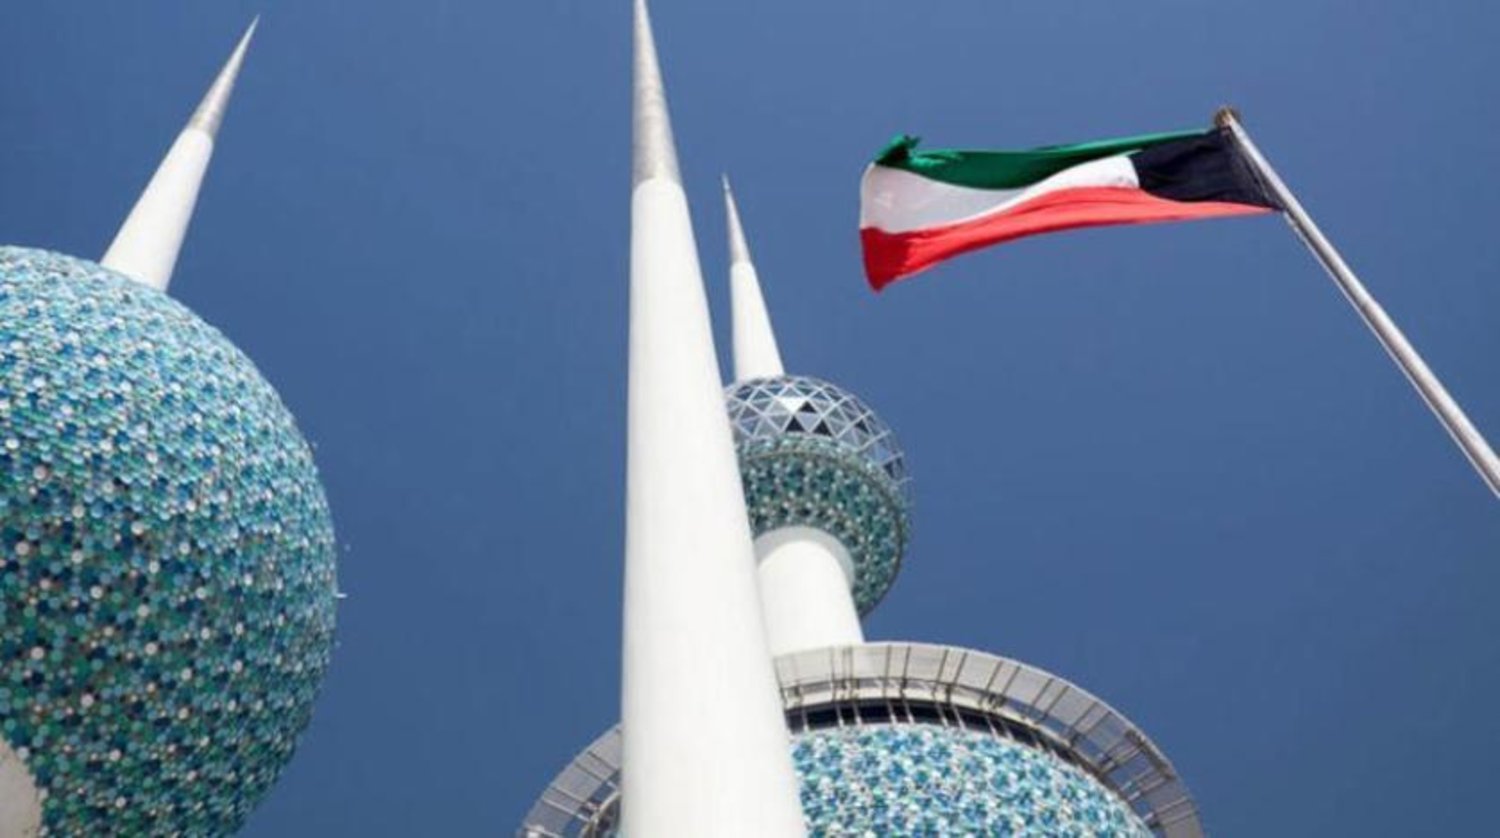 Kuveyt Enformasyon Bakanlığı, 50 yerel internet gazetesinin lisansını iptal etti